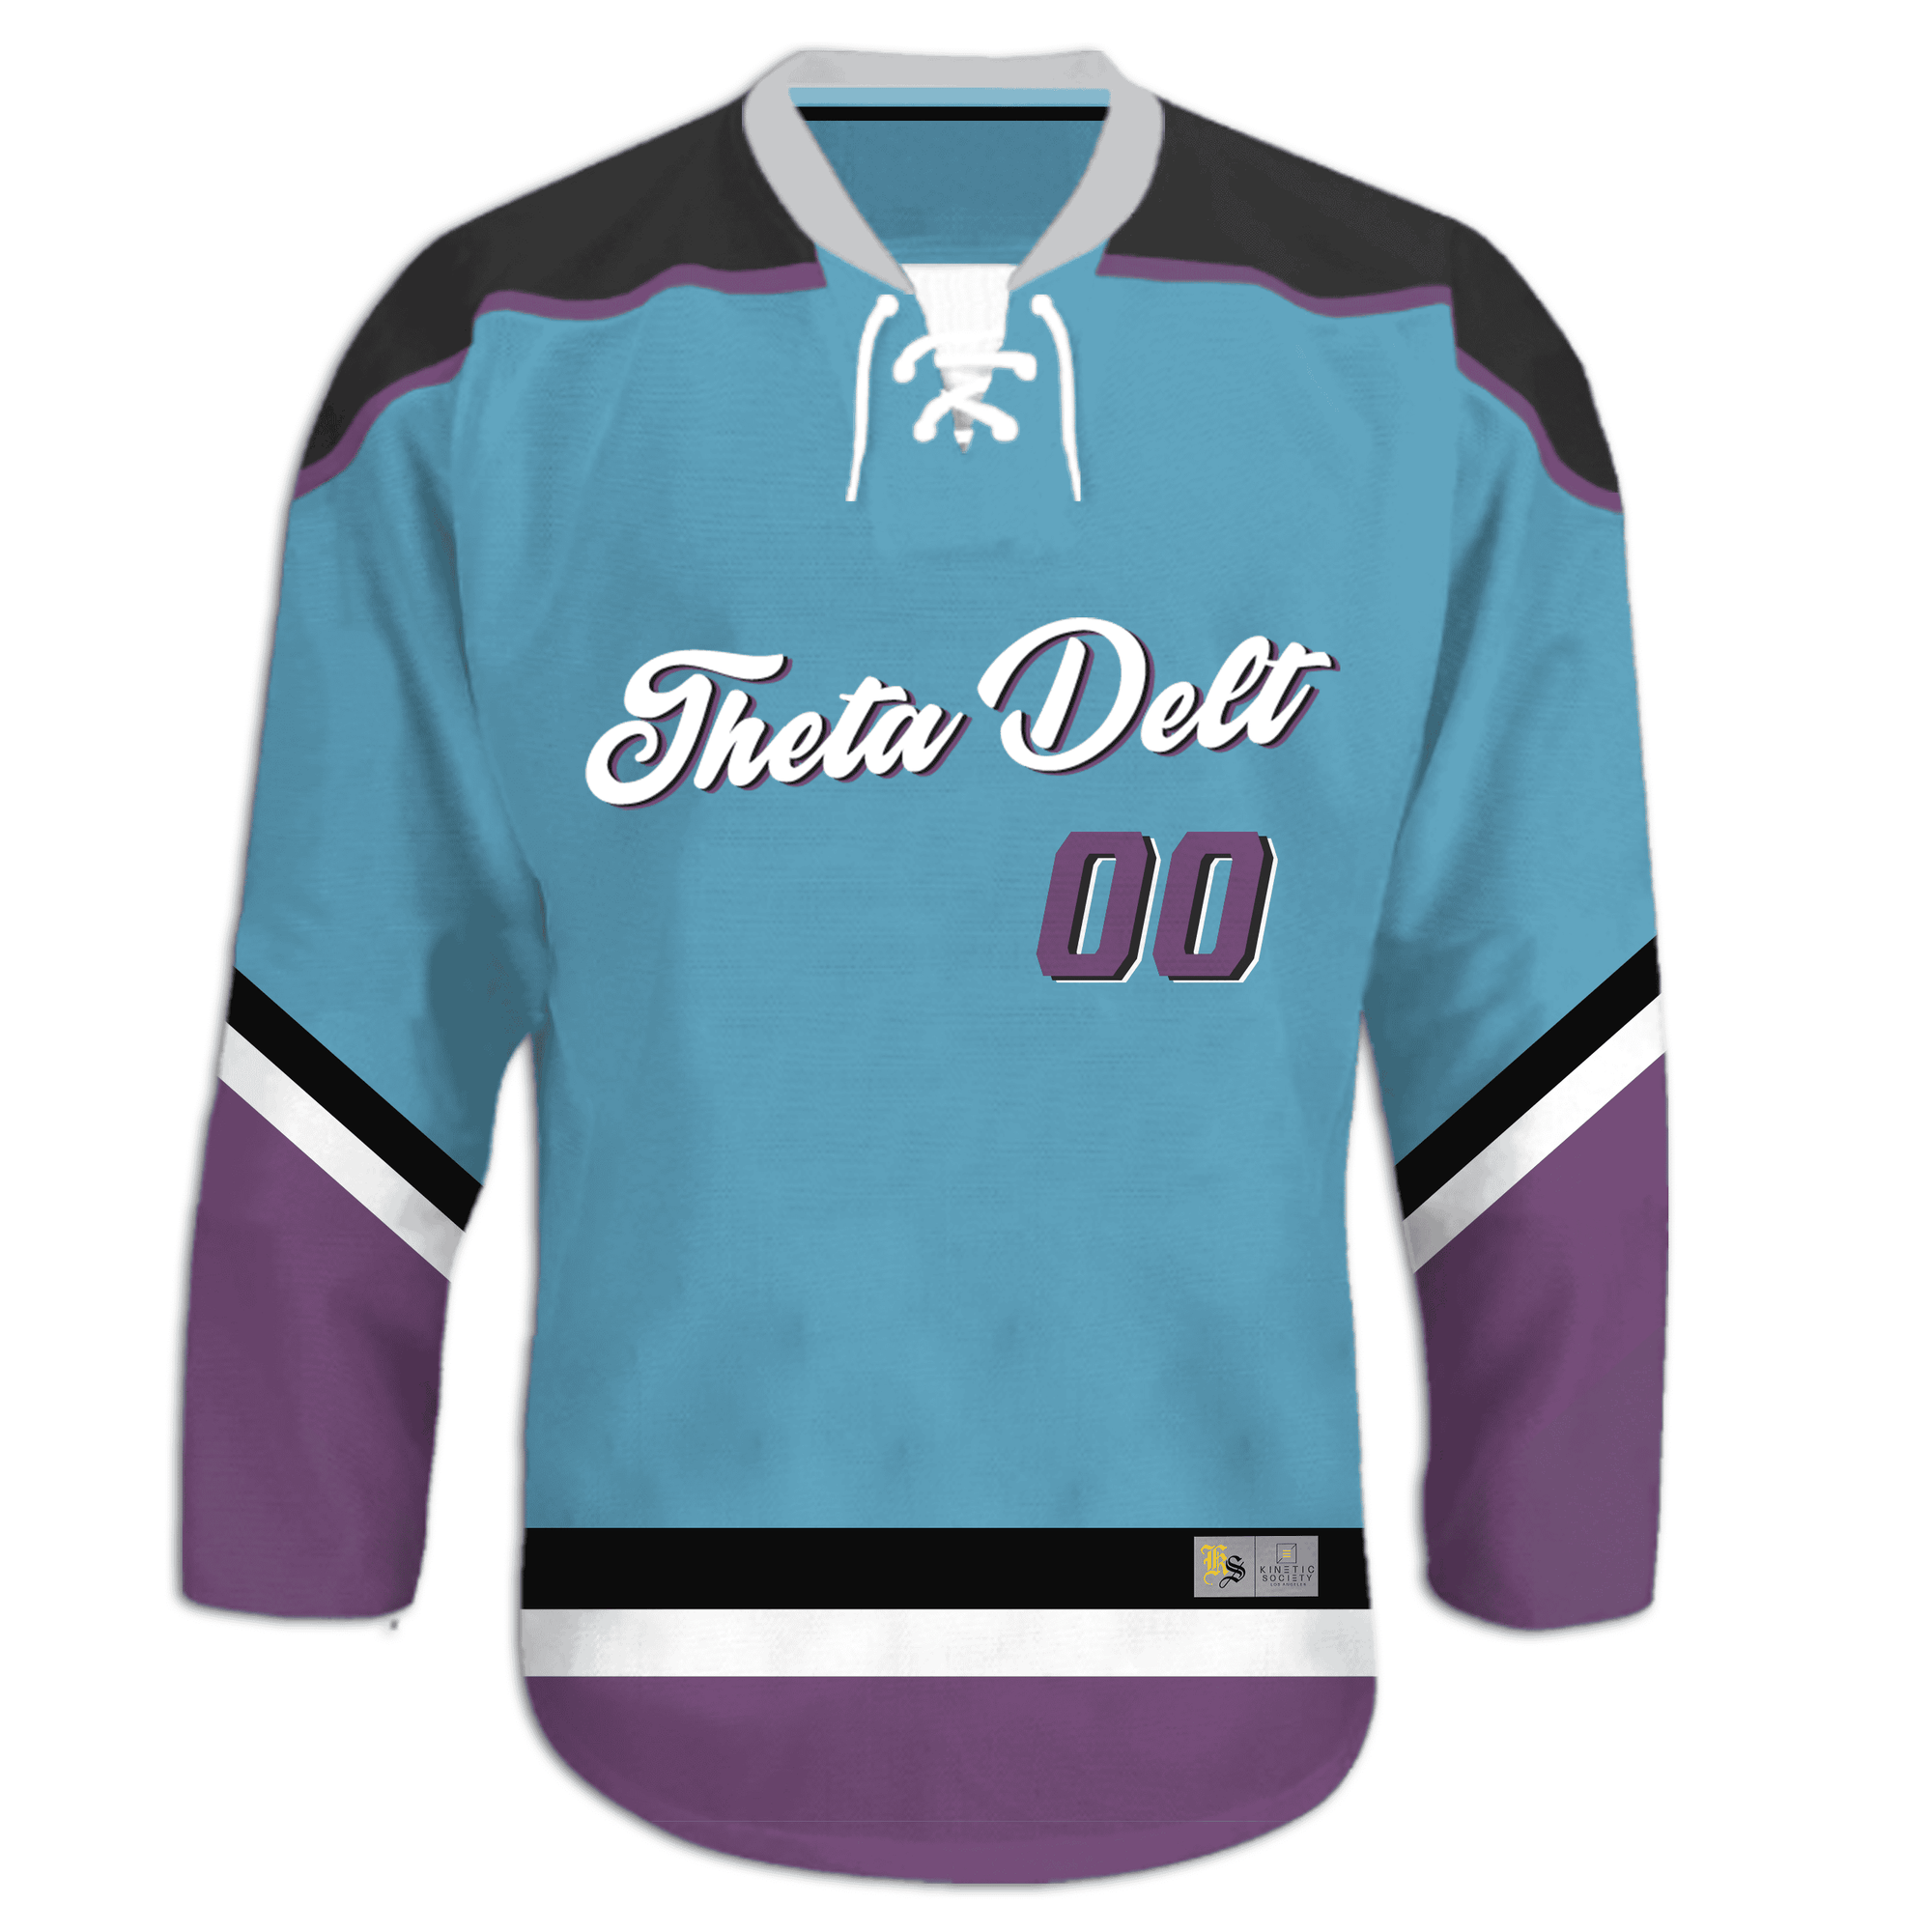 Theta Delta Chi - Kratos Hockey Jersey